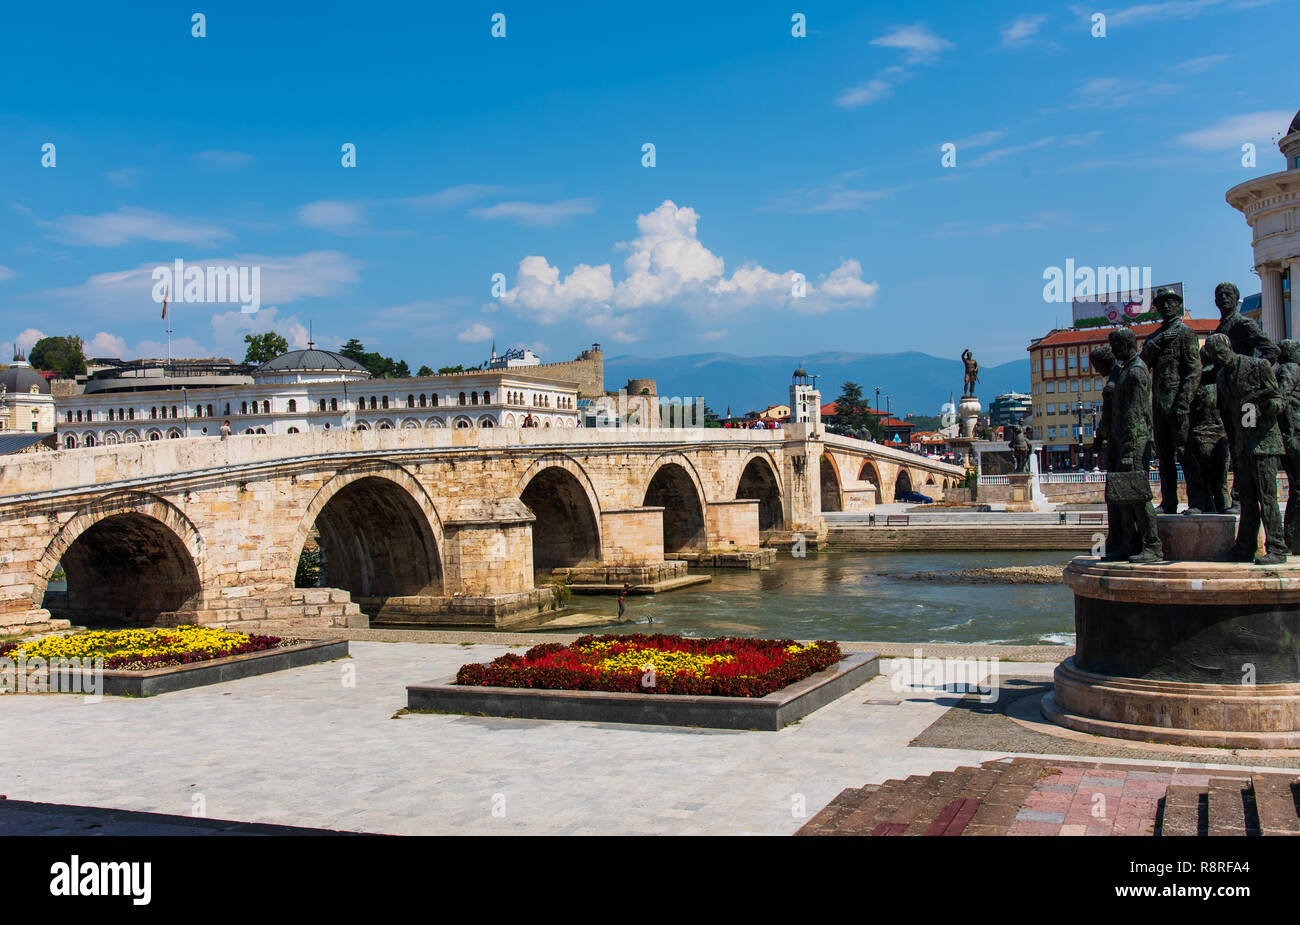 Skopje, Mazedonien - 26. August 2017: Skopje Steinbrücke über den Fluss Vardar in der Nähe Hauptplatz in Skopje, der Hauptstadt von Mazedonien Stockfoto